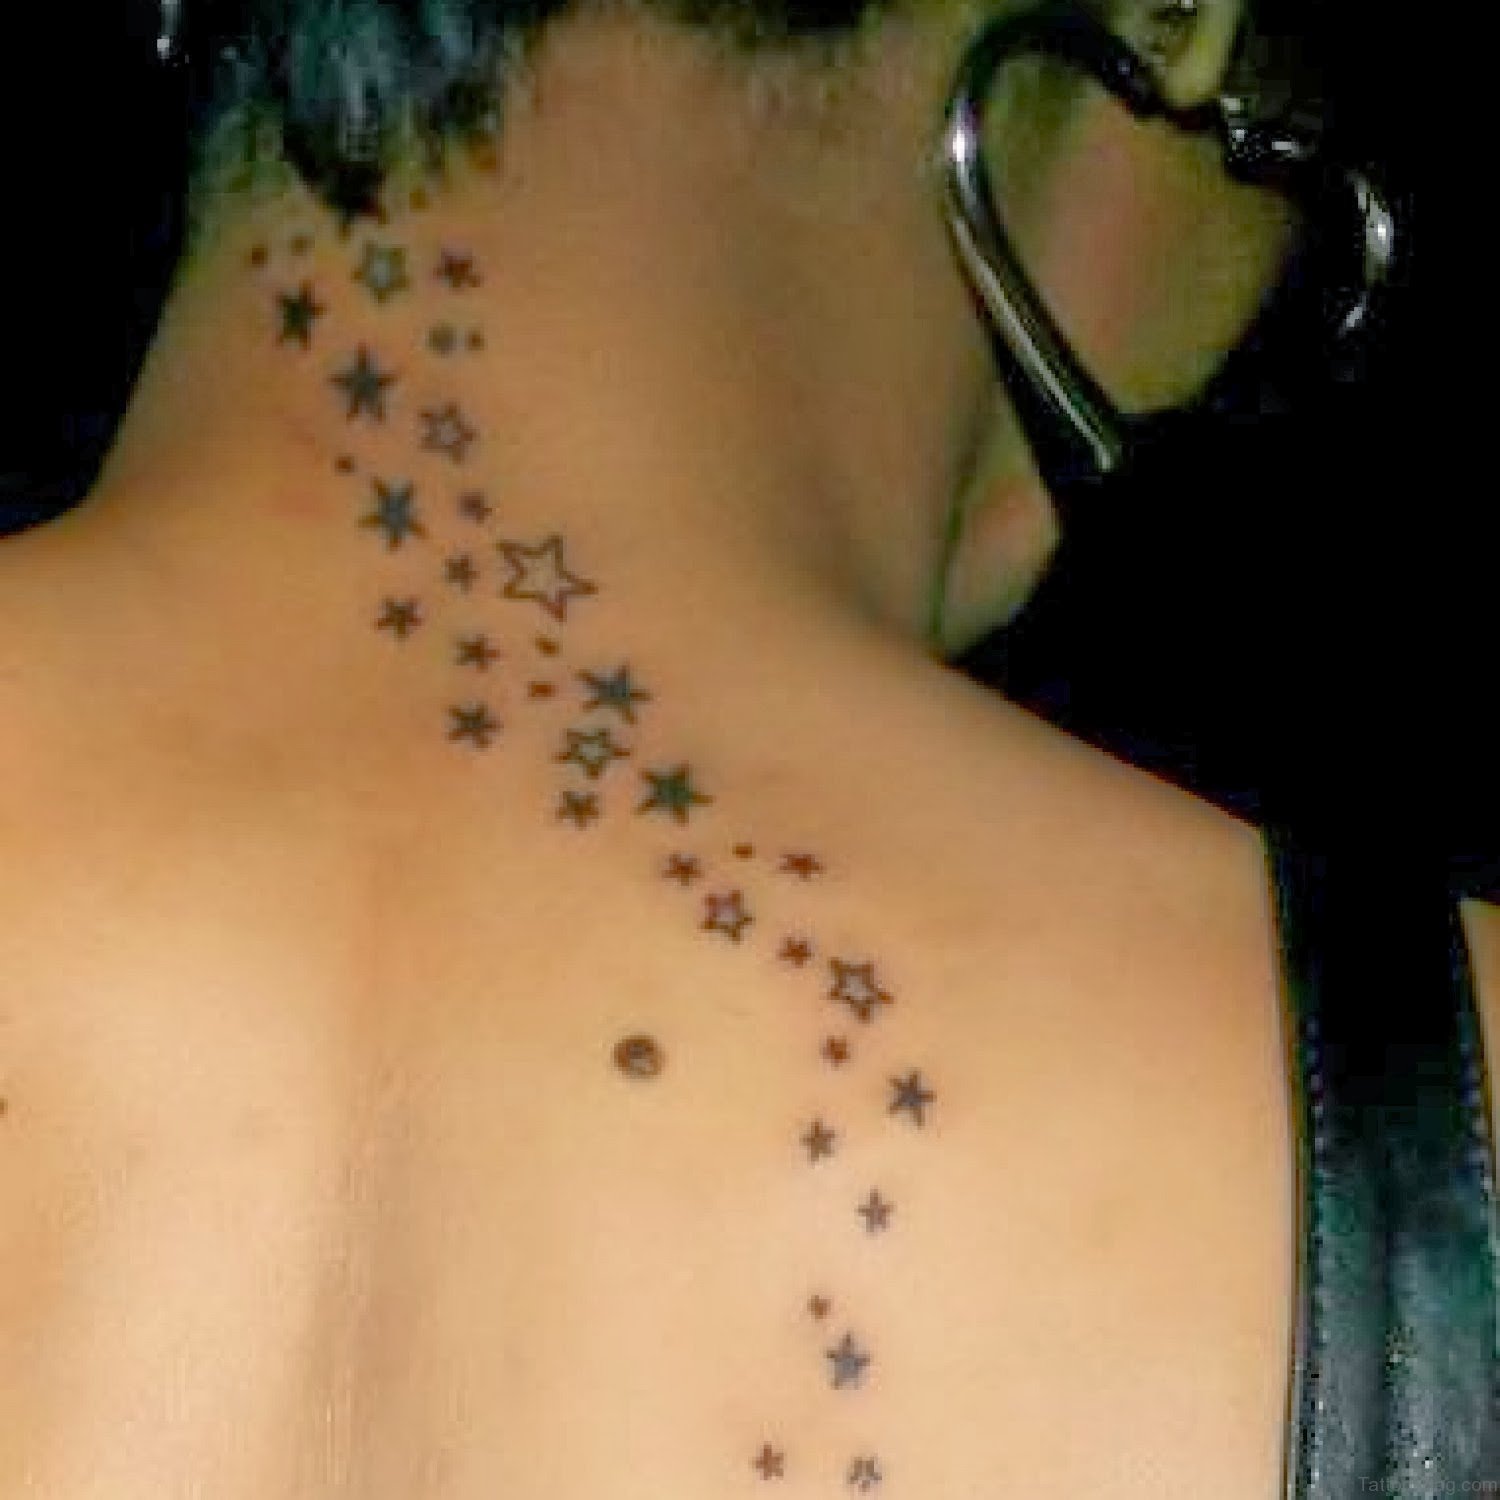 54 Wonderful Star Tattoos On Neck - Tattoo Designs – TattoosBag.com